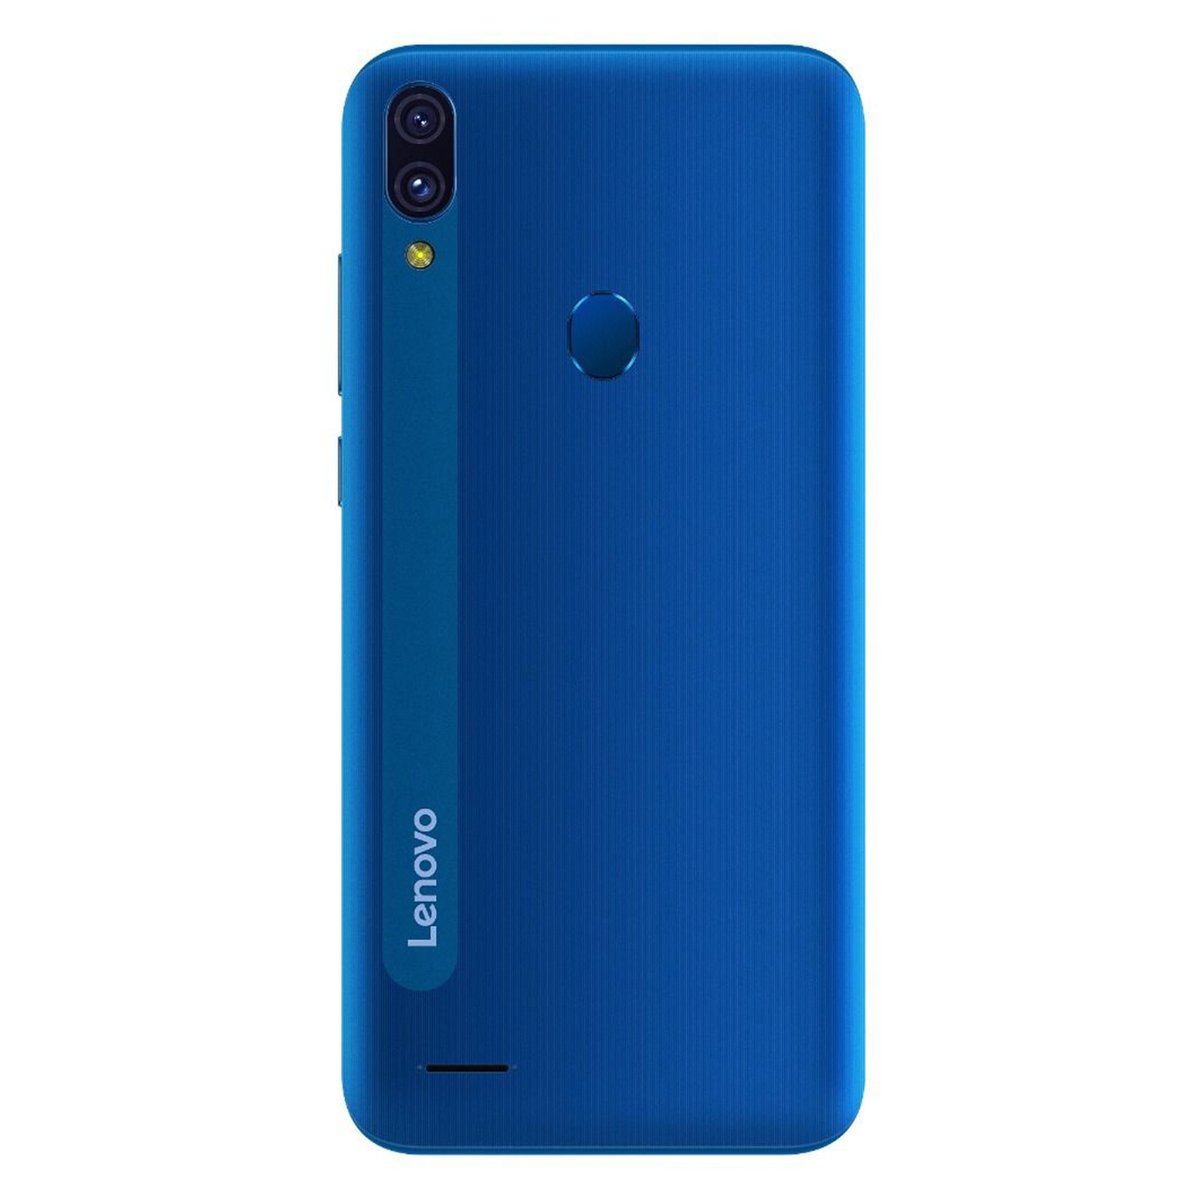 Lenovo A7 64GB Blue